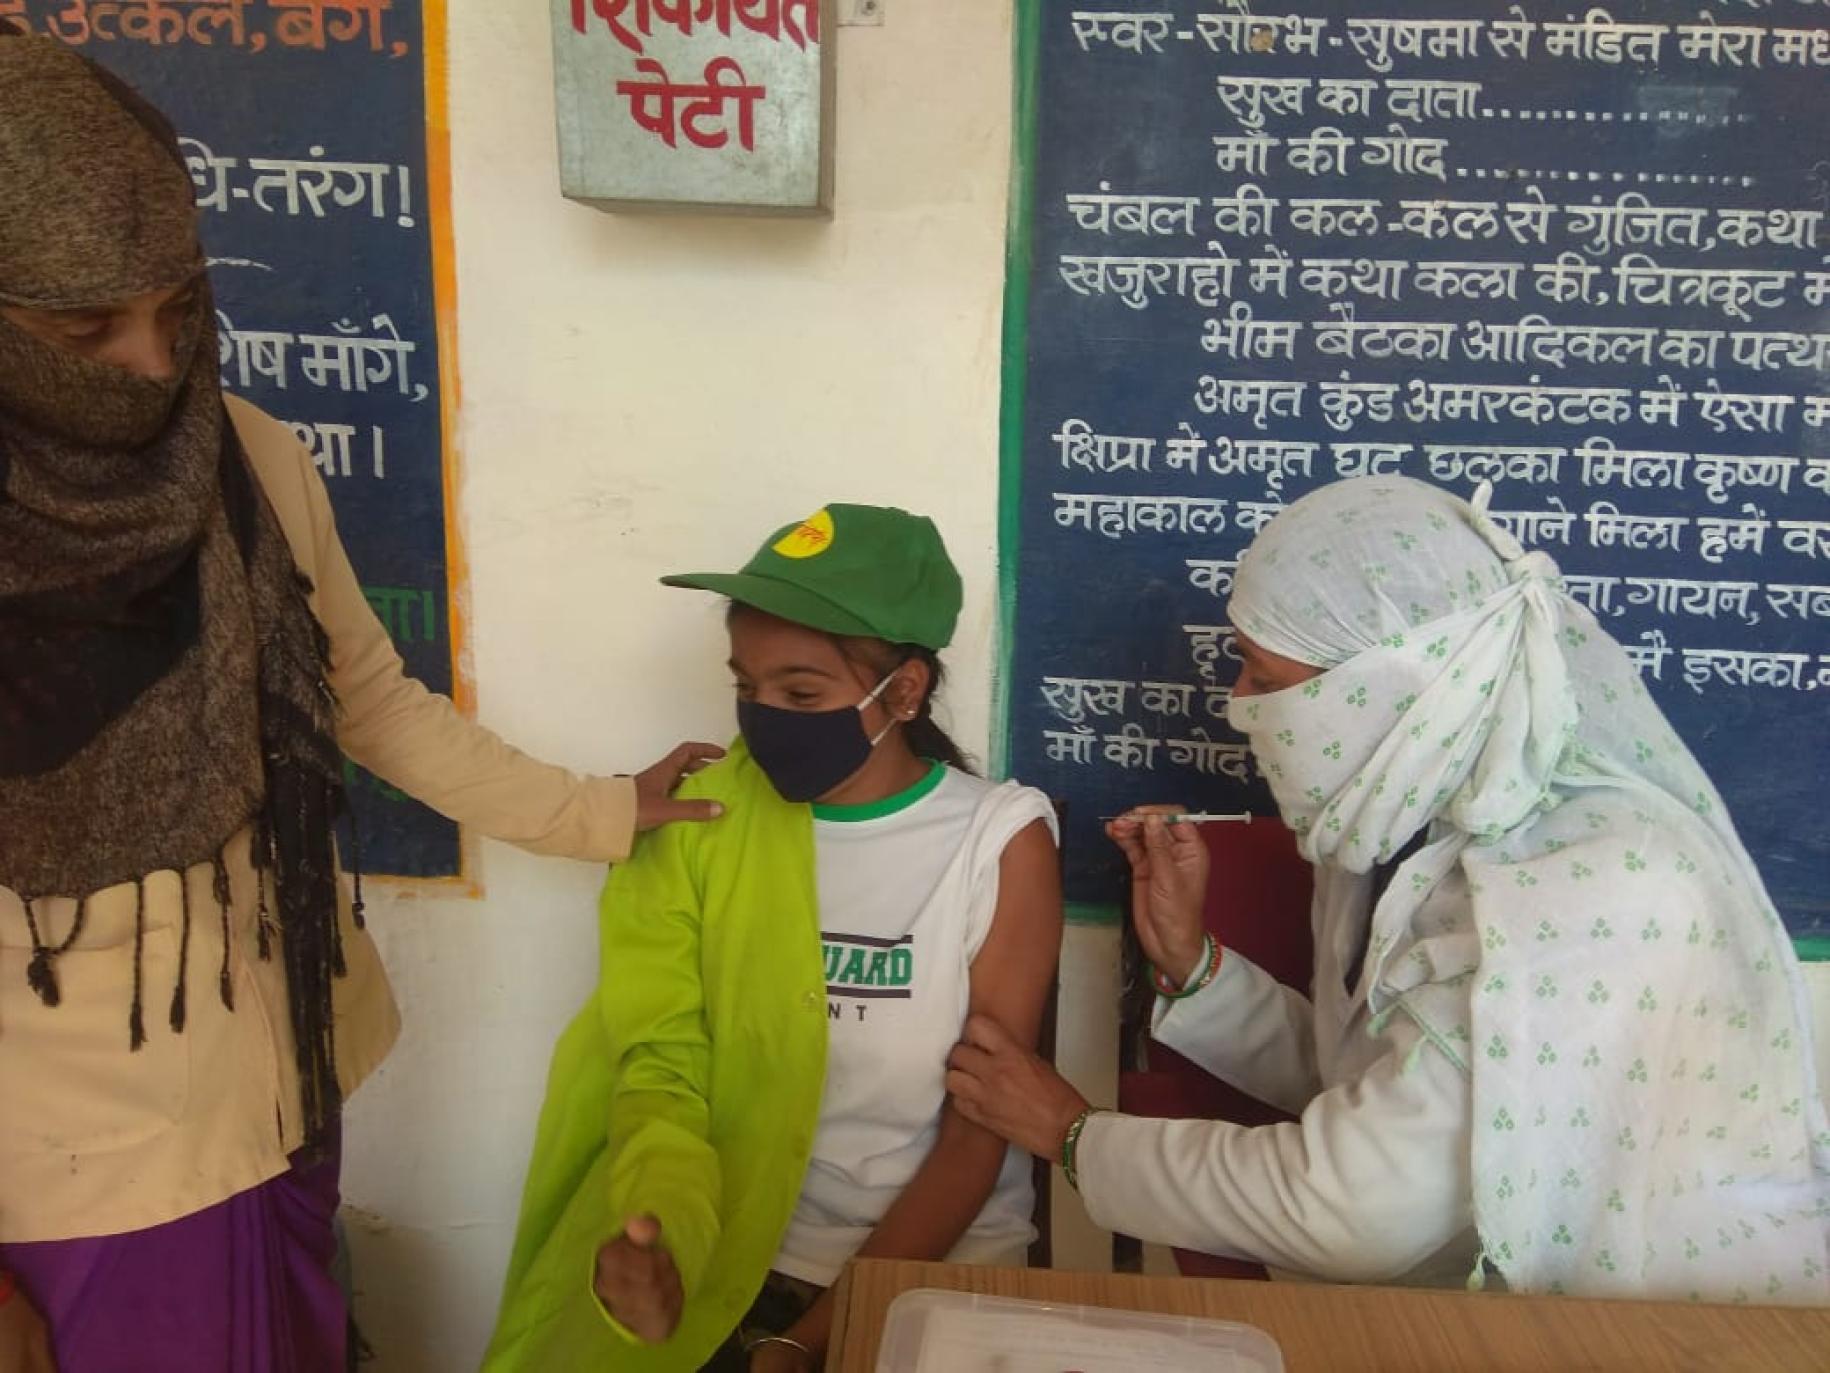 Dans une école du district de Chattarpur, à Madhya Pradesh, en Inde, une jeune fille portant une casquette verte et un masque de protection respiratoire se fait vacciner contre la COVID-19 par une infirmière voilée, alors qu’une autre femme, voilée également, pose la main sur l’épaule de la jeune fille pour la rassurer. 